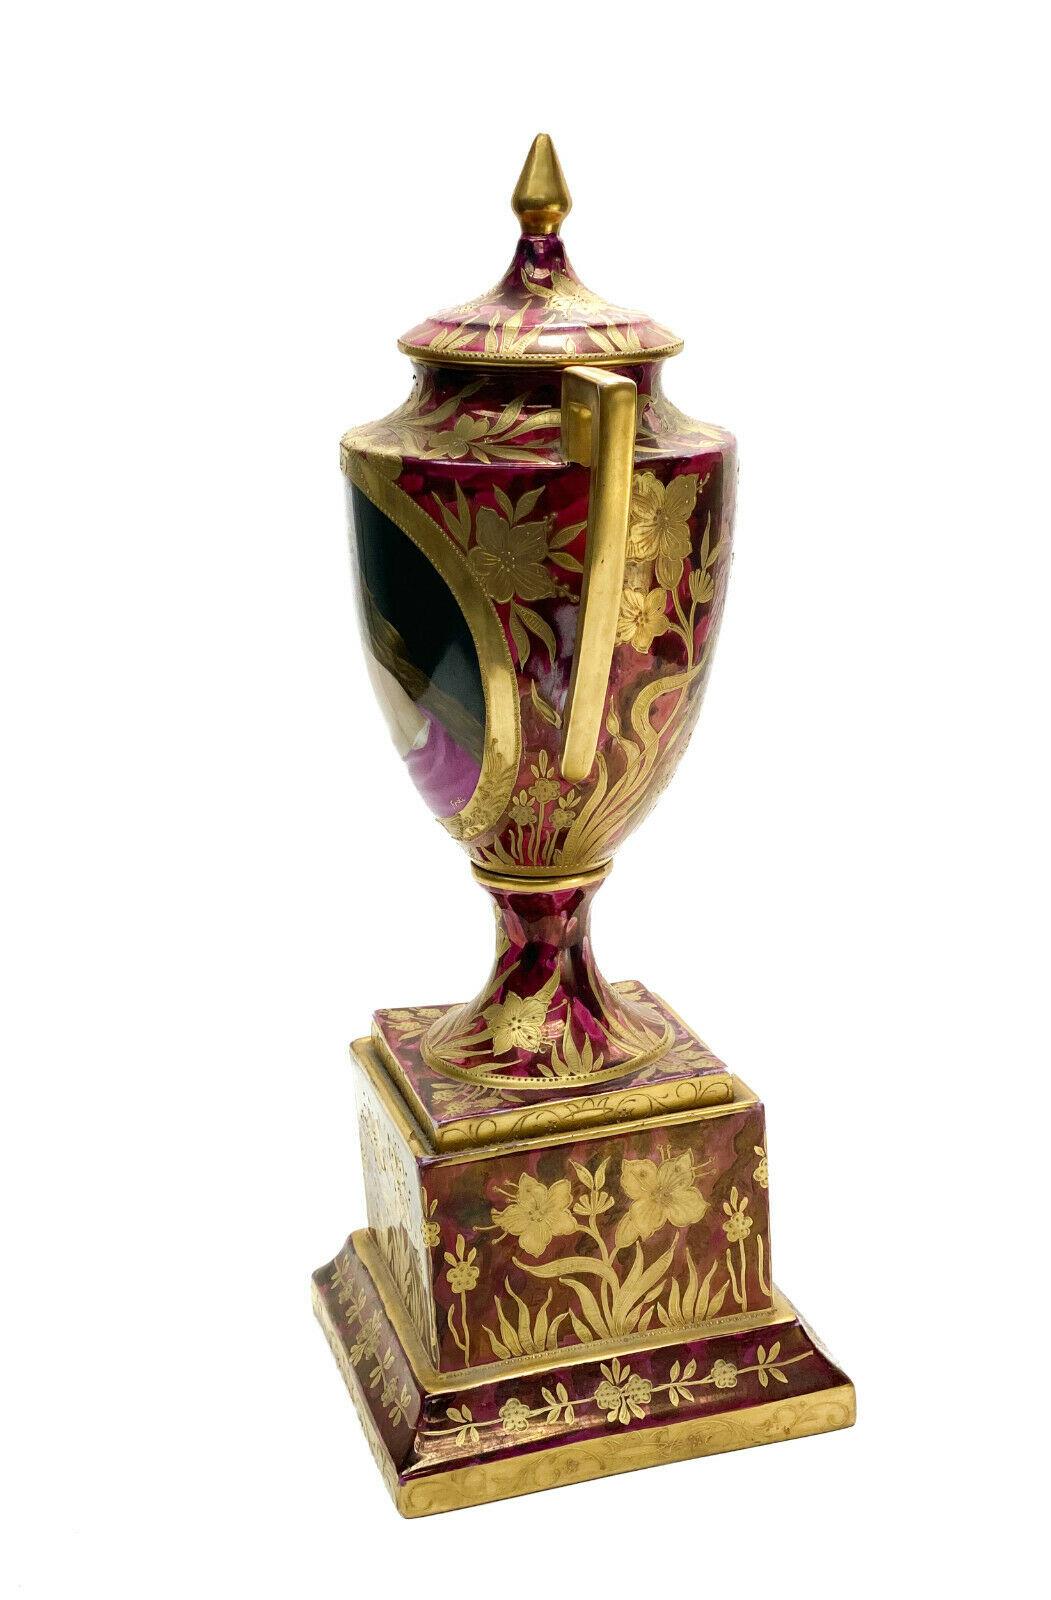 Urne à double poignée en porcelaine peinte à la main Royal Vienna Austria, circa 1900

Un fond rouge bordeaux avec des feuilles et des accents floraux dorés sur toute la surface. La zone centrale représente une beauté partiellement nue, peinte à la